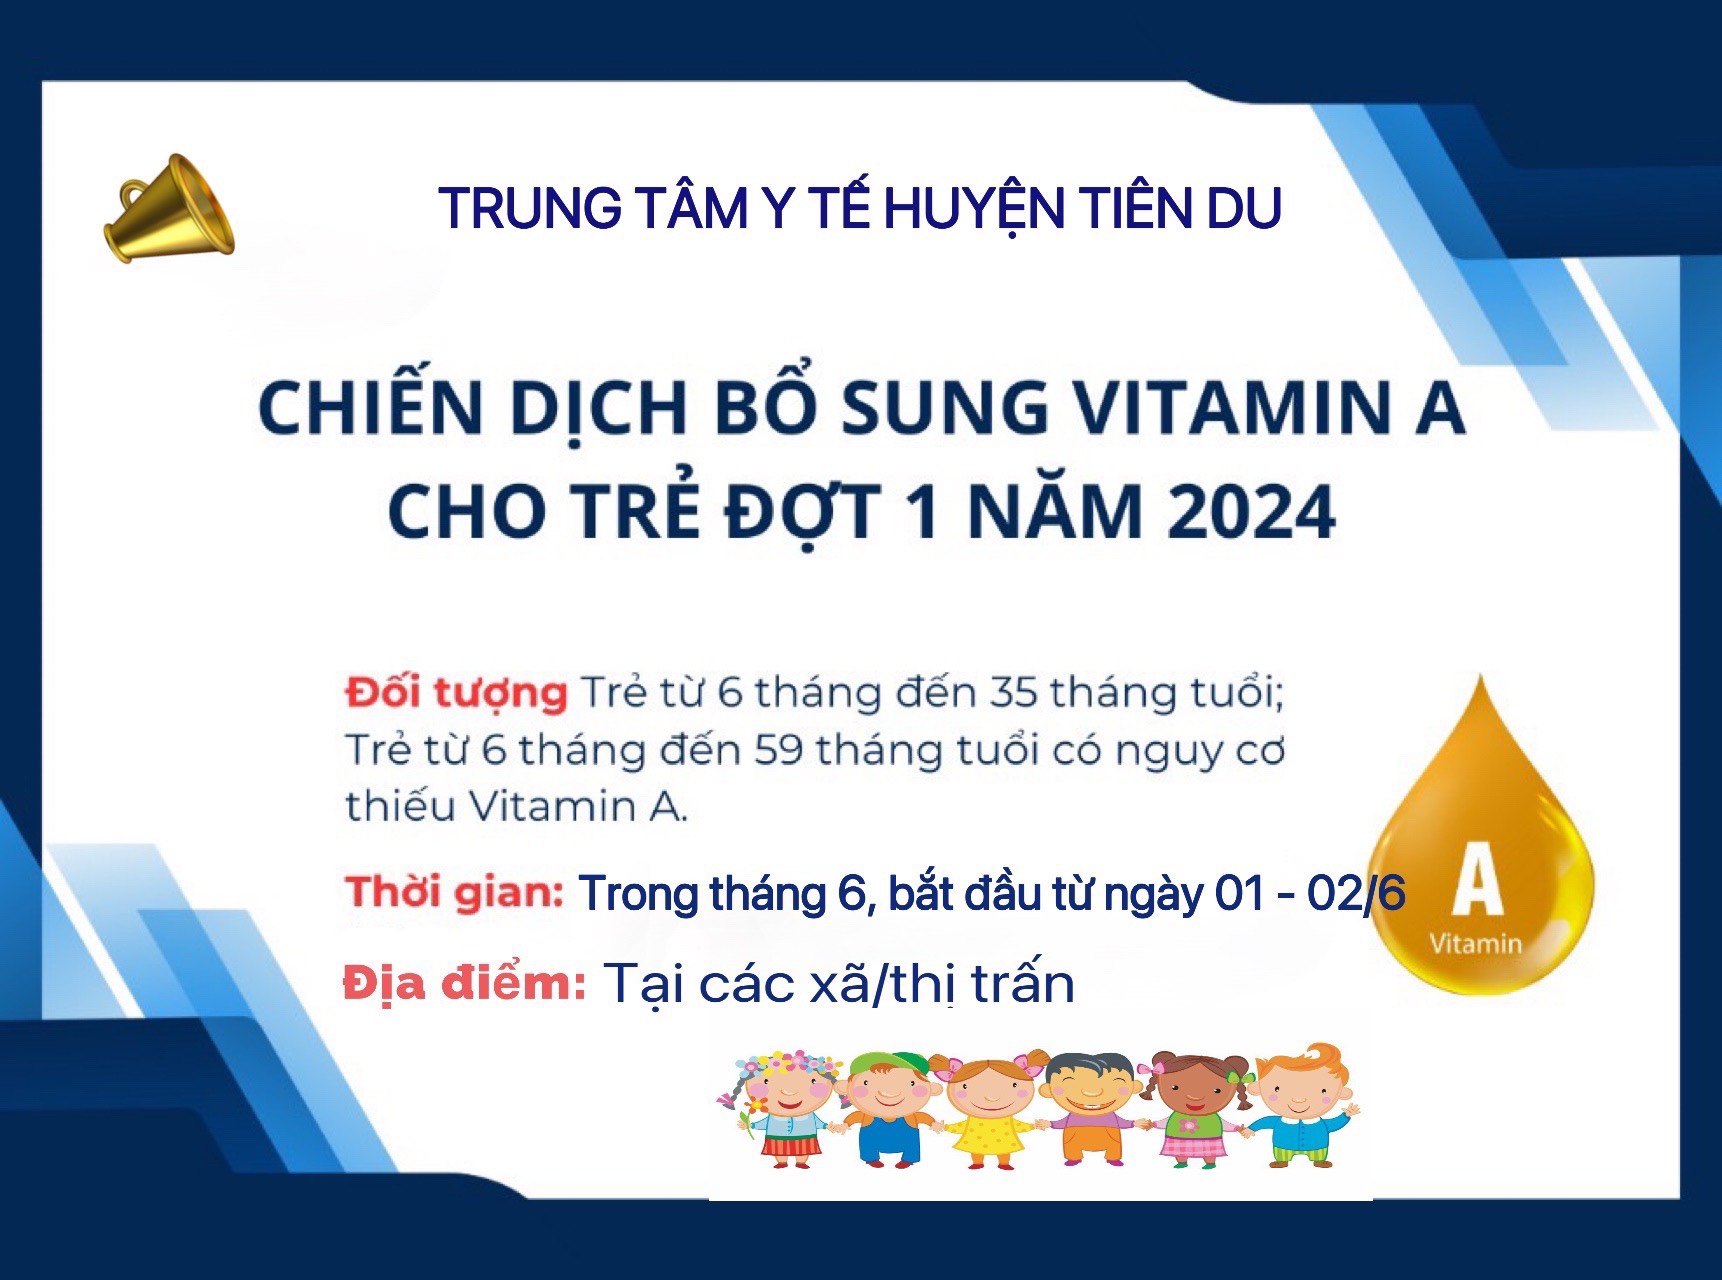 Trung tâm Y tế huyện Tiên Du triển khai chiến dịch bổ sung Vitamin A và cân đo trẻ đợt 1 năm 2024